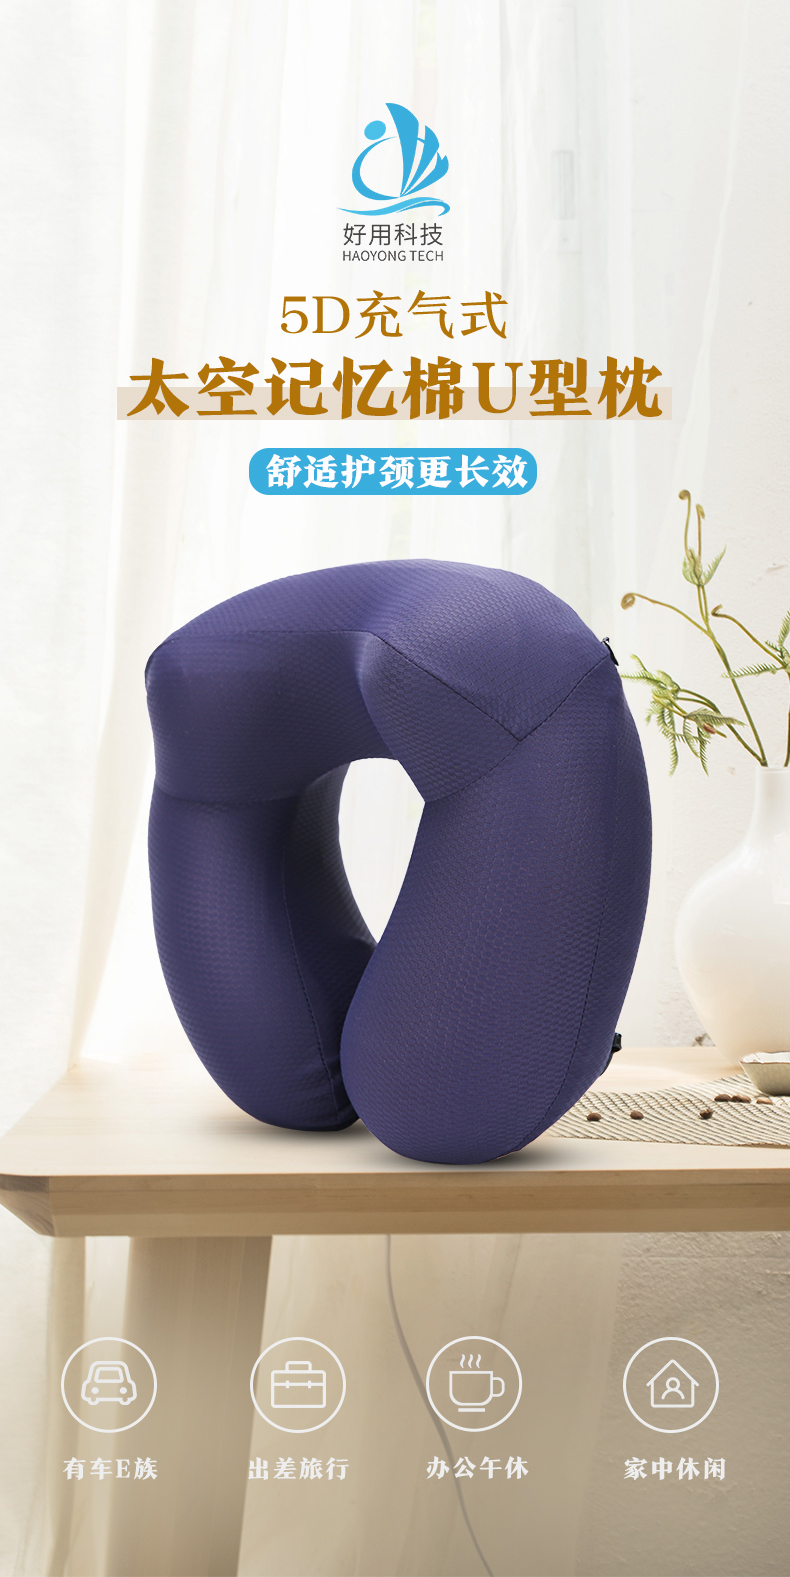 我们推荐汽车记忆棉枕货源_u型记忆枕相关-广州好用科技有限公司